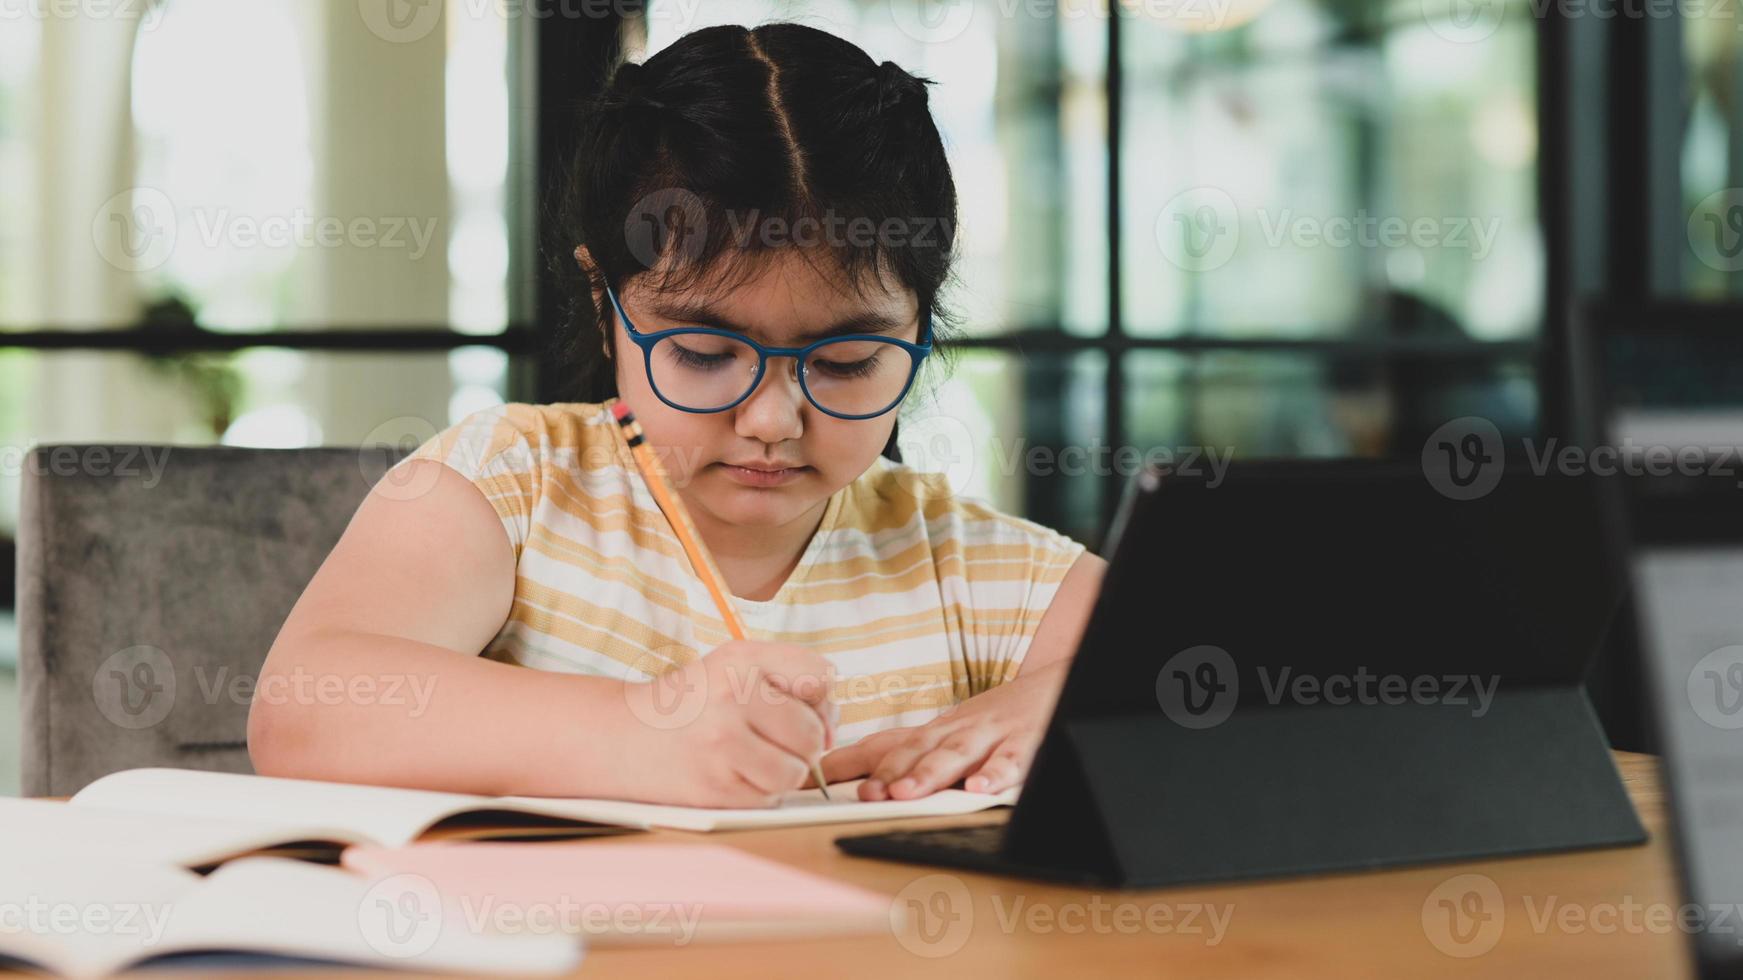 ragazza asiatica del bambino con gli occhiali che fa i compiti in un taccuino. foto